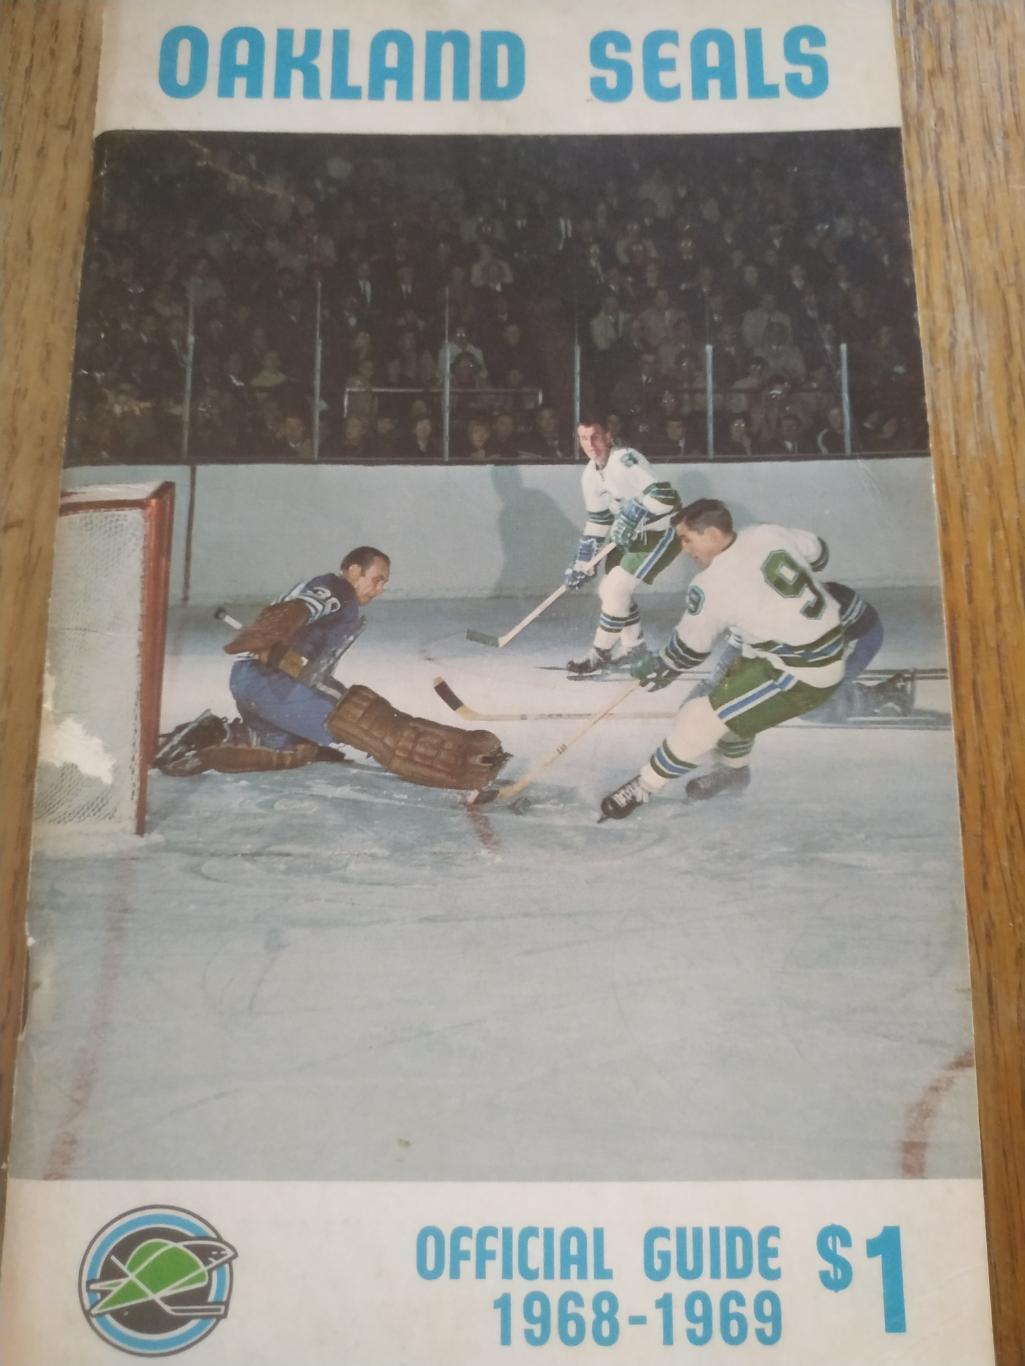 ХОККЕЙ СПРАВОЧНИК ЕЖЕГОДНИК НХЛ 1968-69 NHL OKLAND SEALS OFFICIAL GUIDE